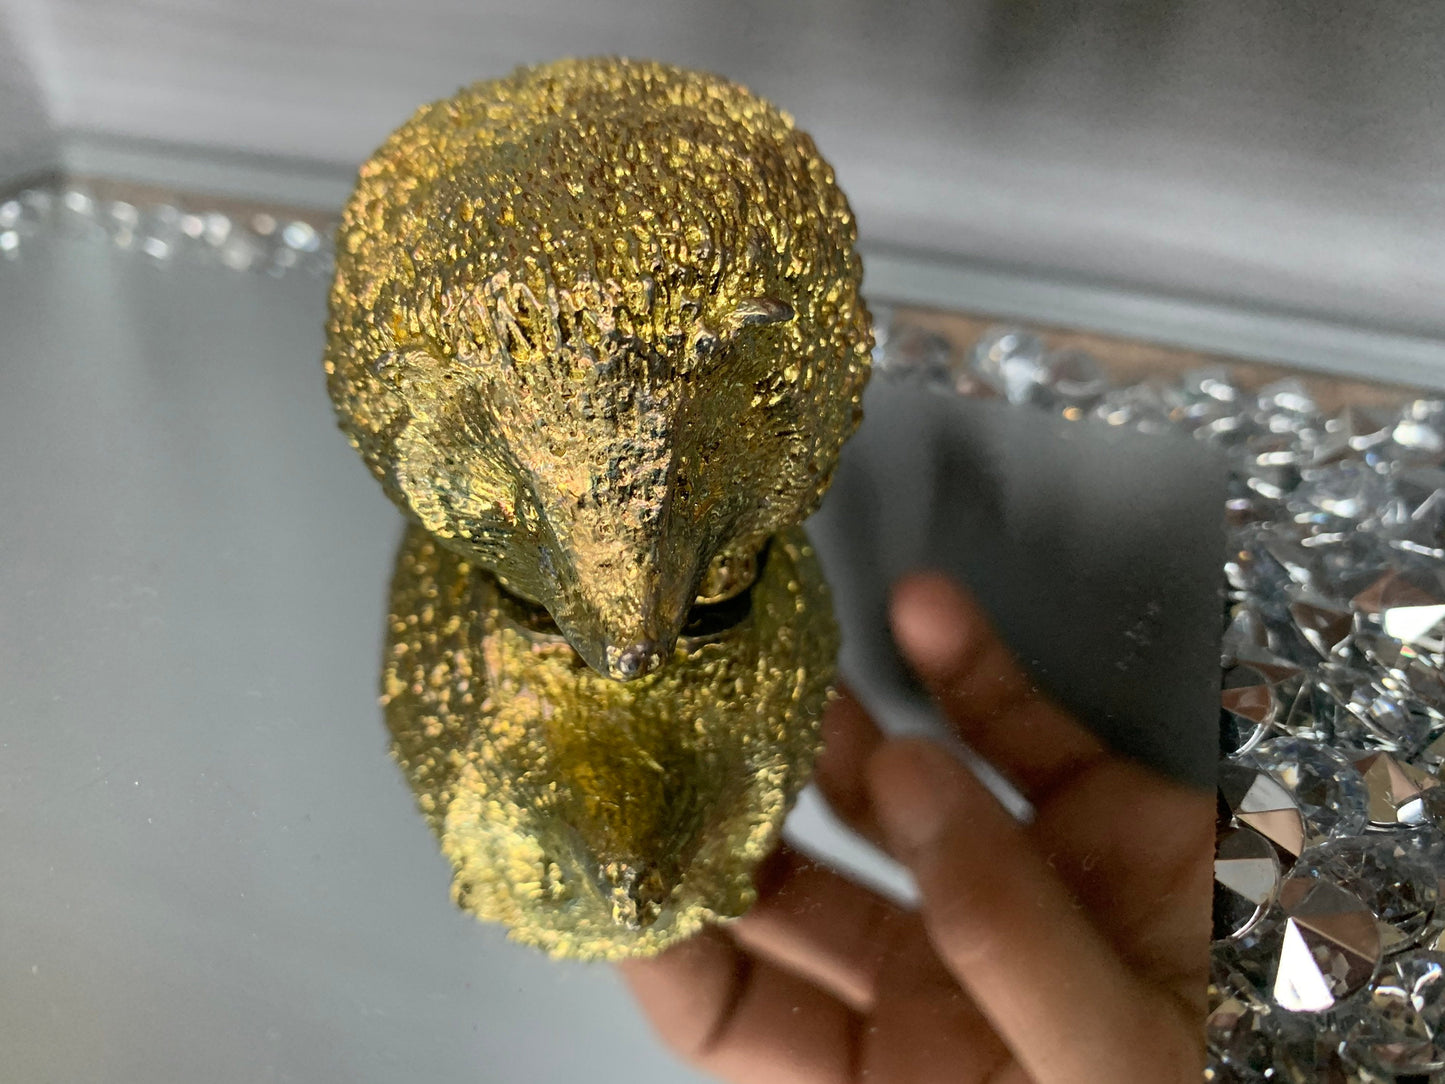 Gold Bismuth Crystal Large Hedgehog Metal Art Sculpture